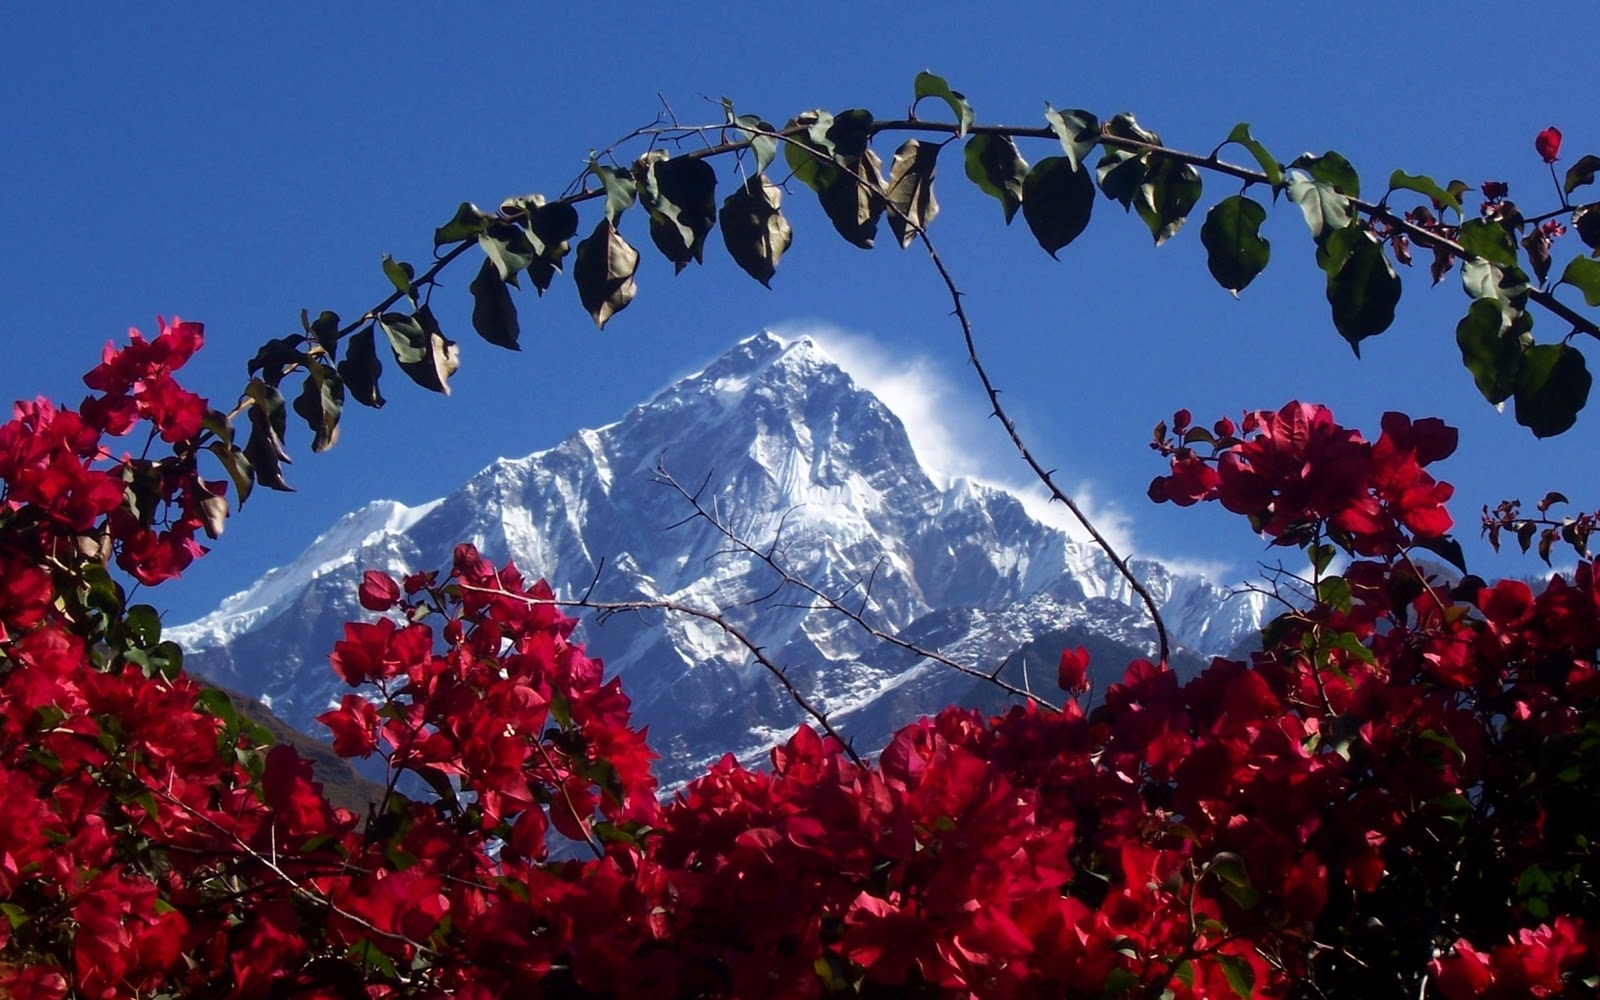  TGxUtN78AeIAAAAAAAAATYRfAxIeUXAyUs16006   Himalaya in Nepaljpg